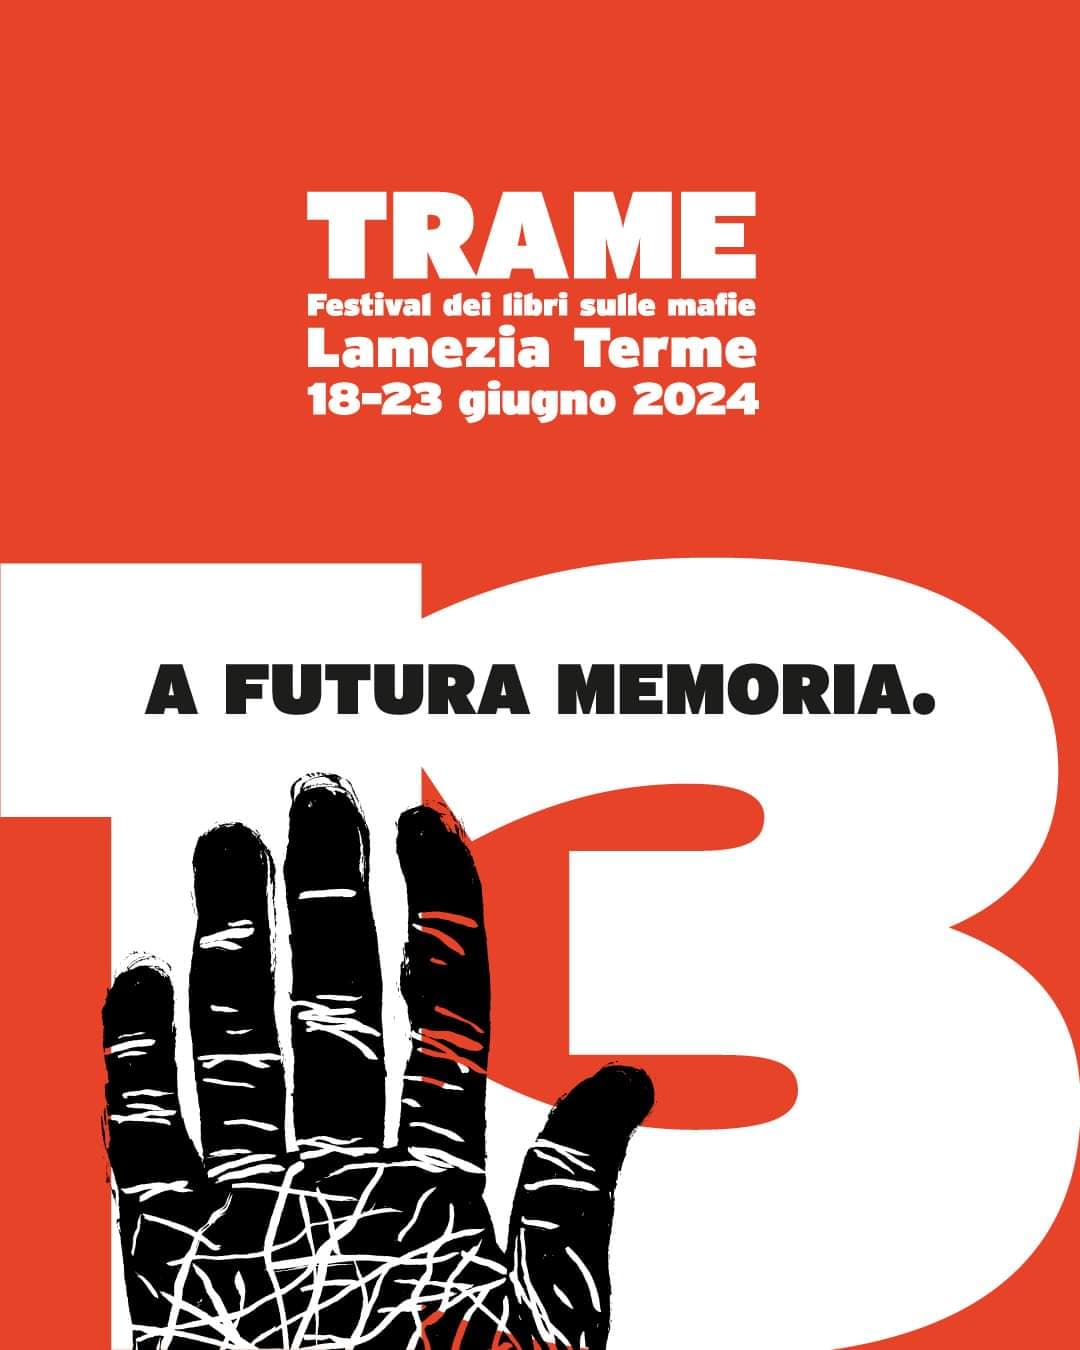 Trame - Festival dei libri sulle mafie Dal 18 al 23 Giugno 2024 Lamezia Terme